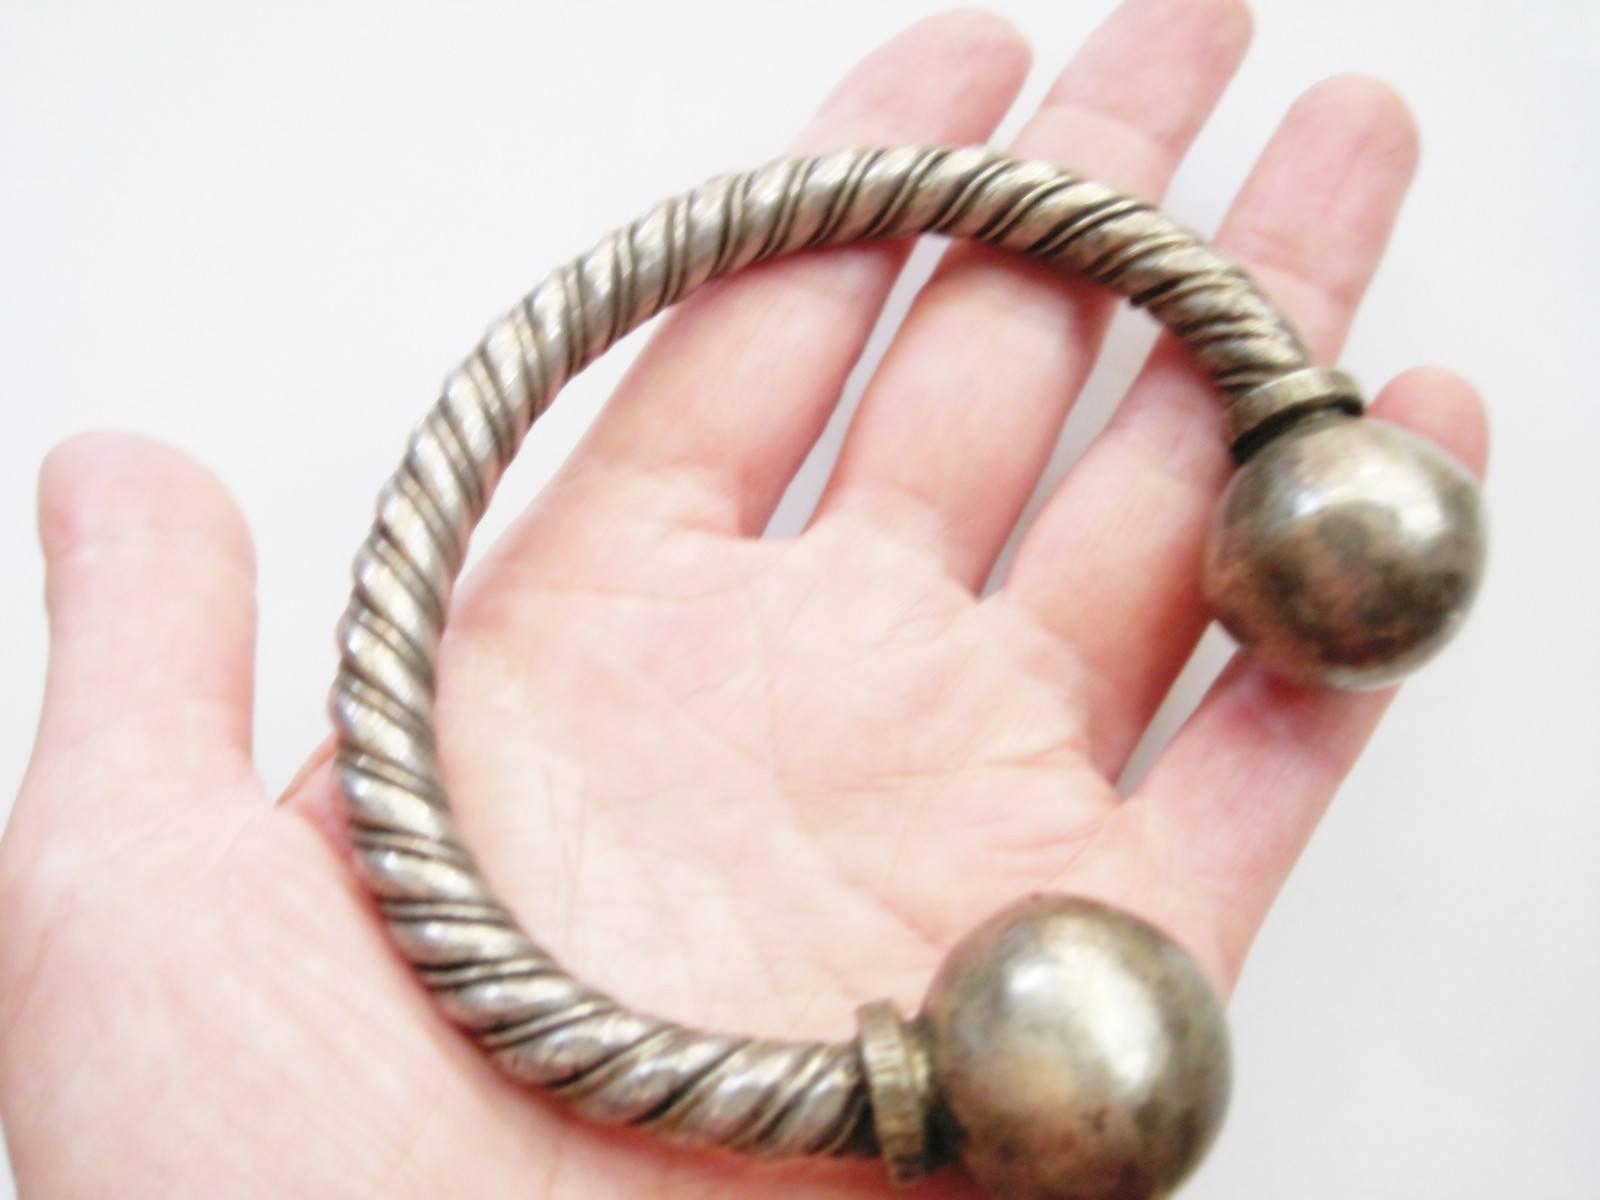 twisted wire bracelet